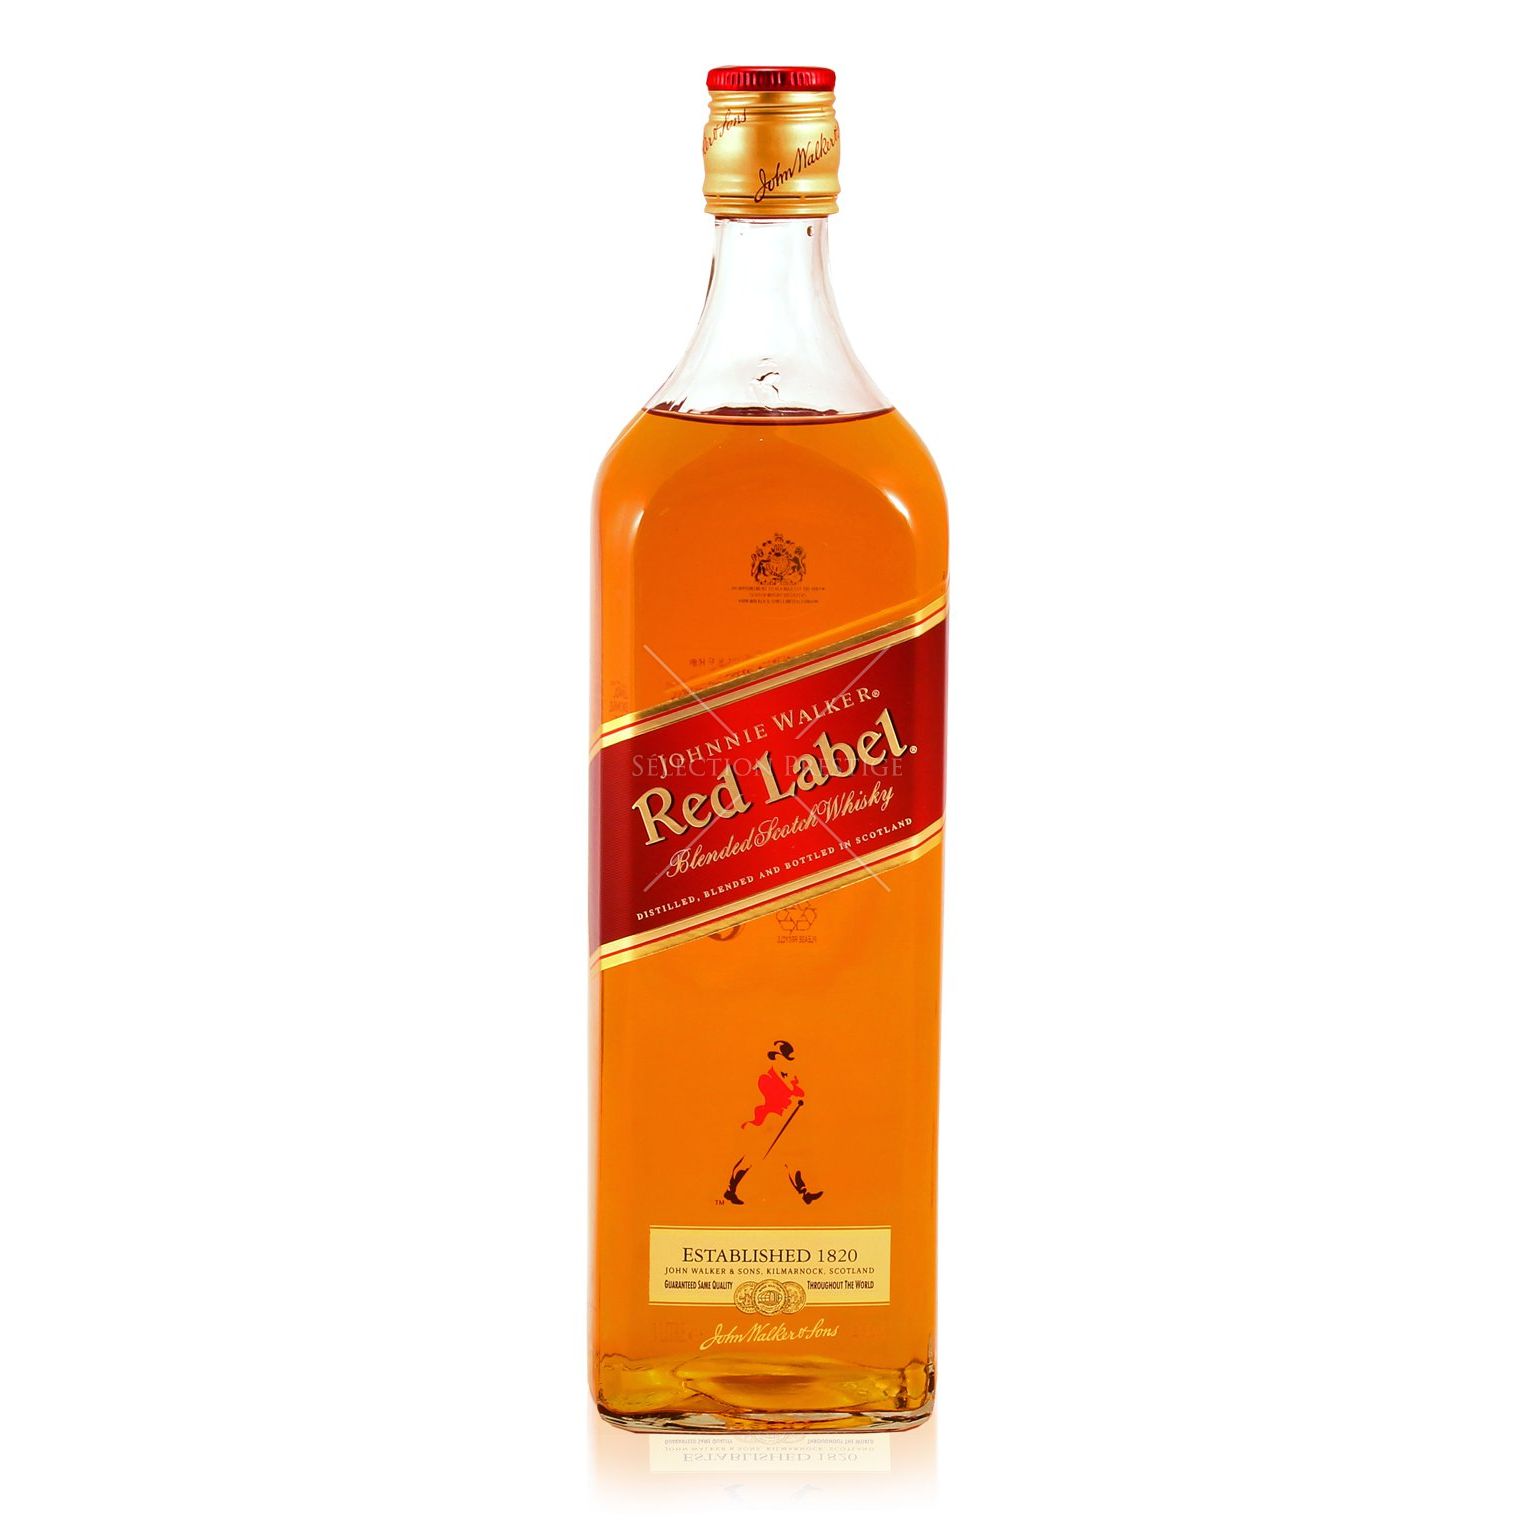 Sắc đỏ đặc trưng của nhãn hiệu Scotch Whisky mạnh mẽ này được ưa chuộng nhất Thế giới - Johnnie Walker Red Label sẽ là món quà rất ý nghĩa với nhiều người